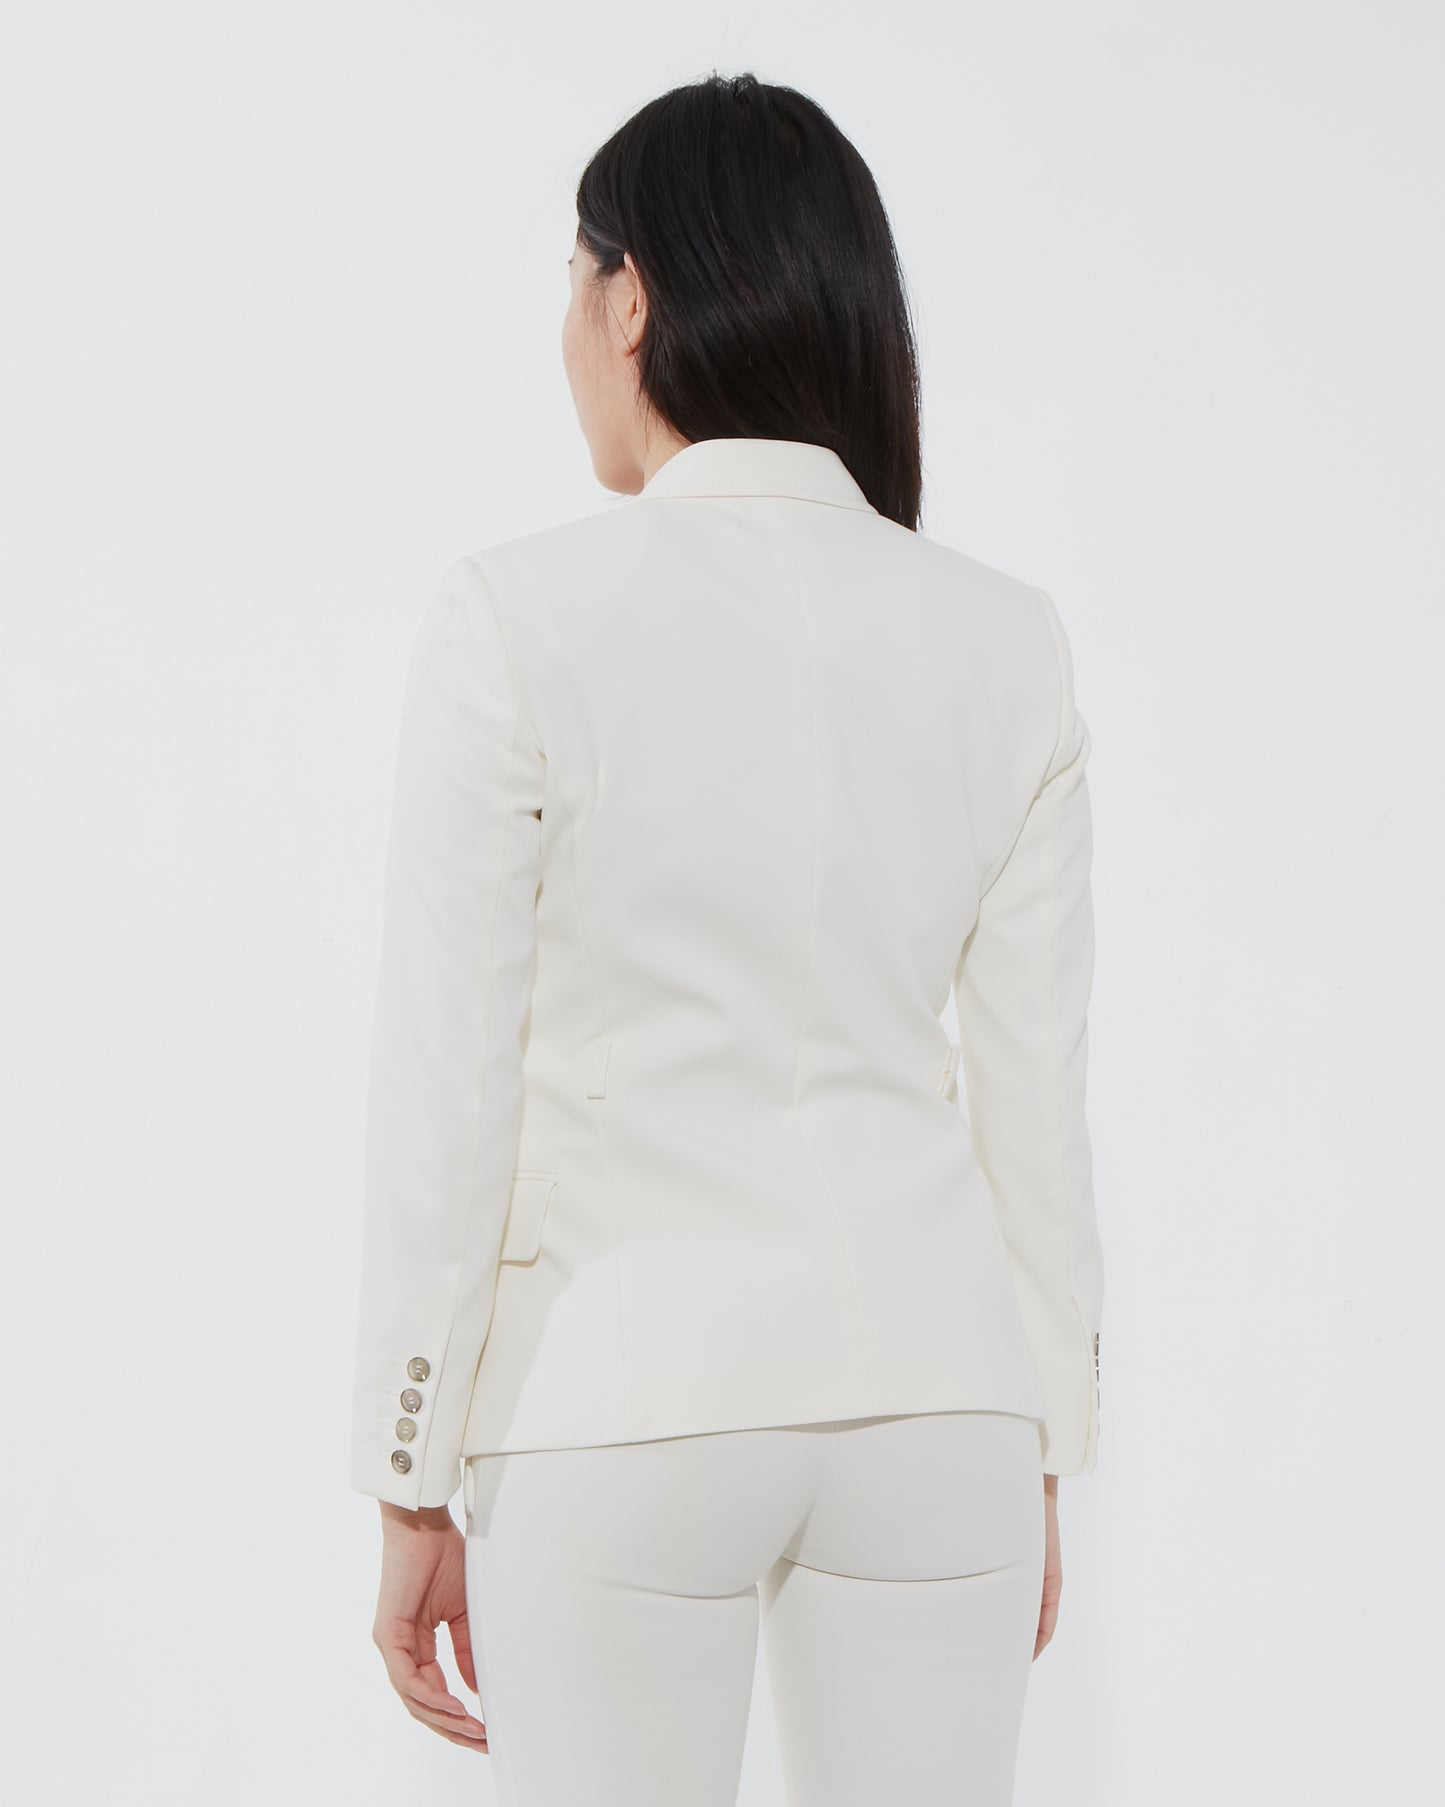 Gucci White Suit Blazer + Brown Belt - 38